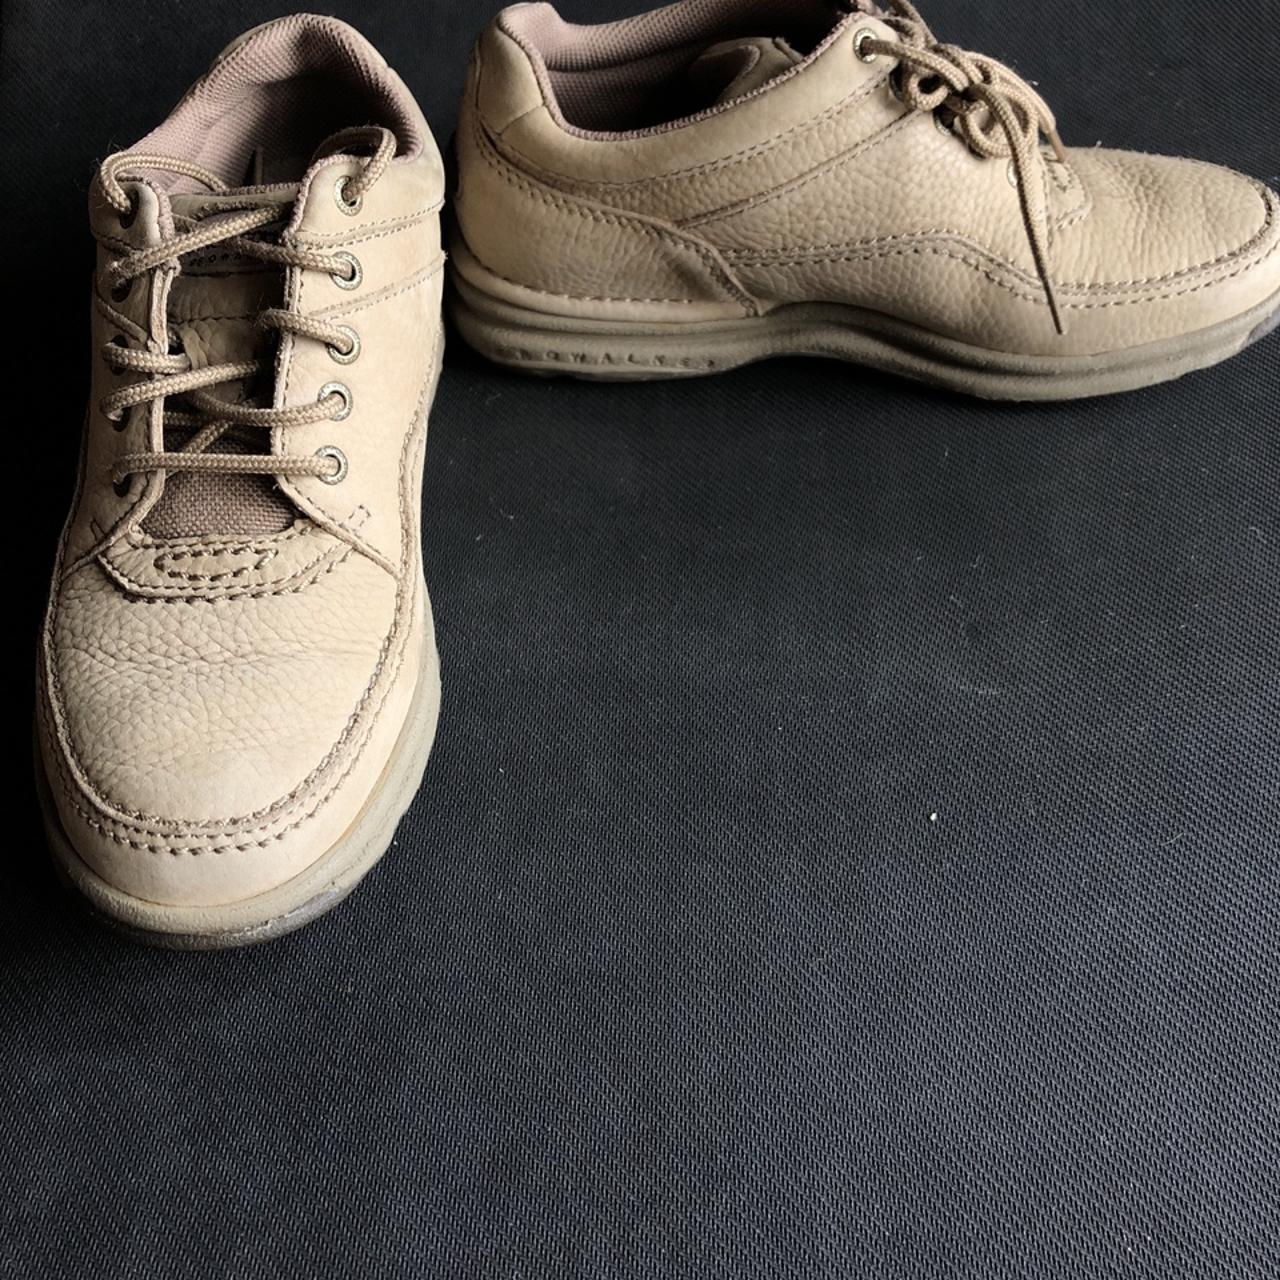 Rockport Prowalker Leather Walking Shoes Women’s... - Depop